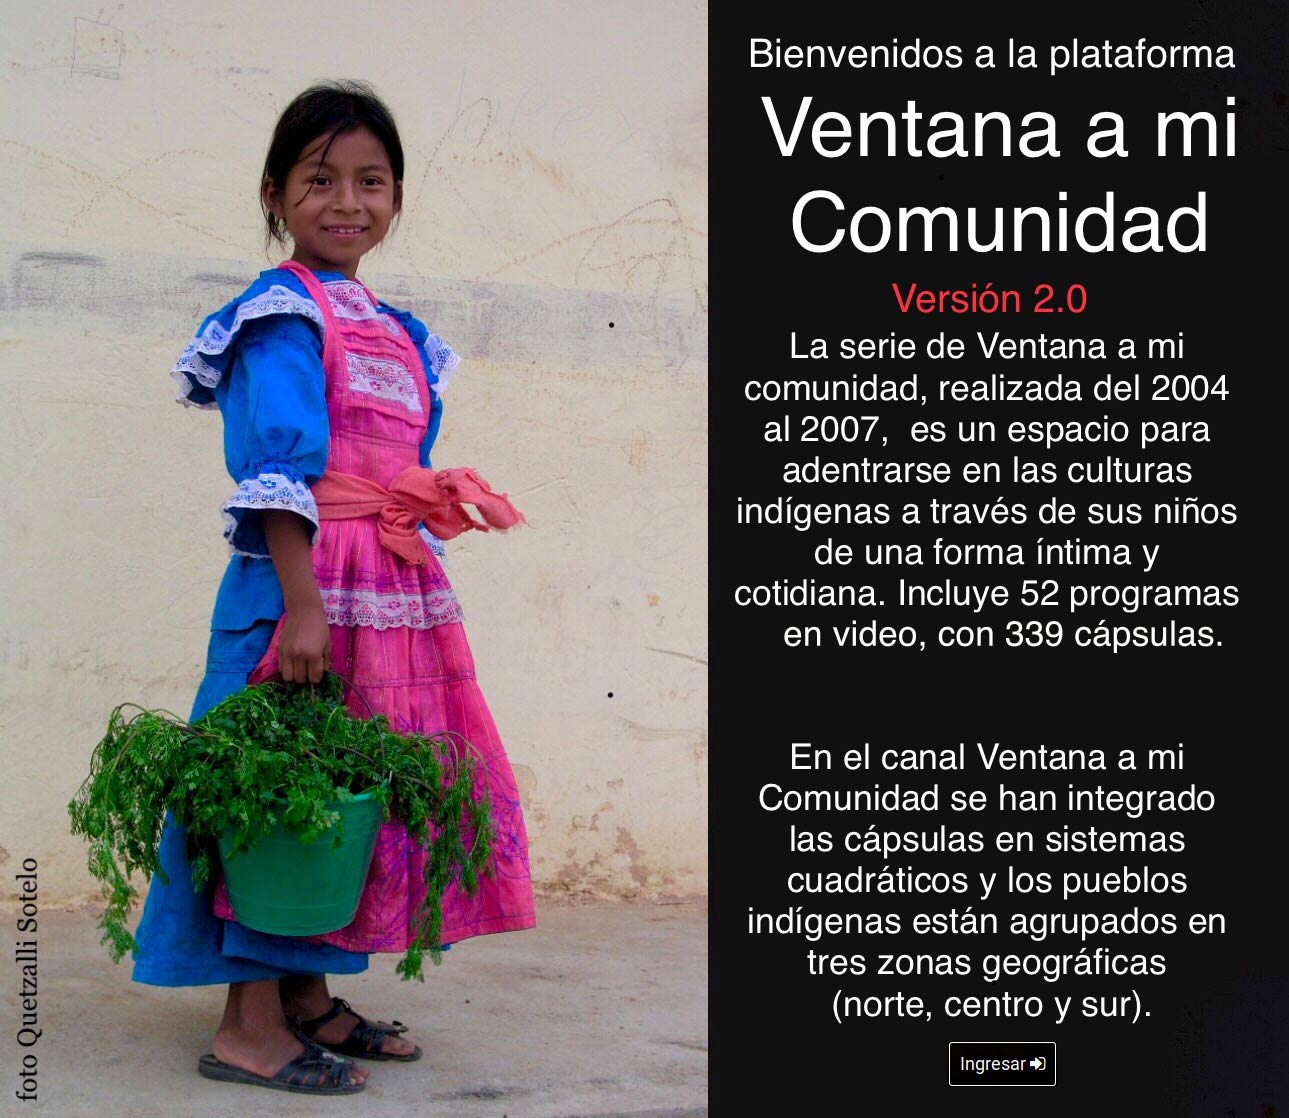 (c) Ventanaamicomunidad.org